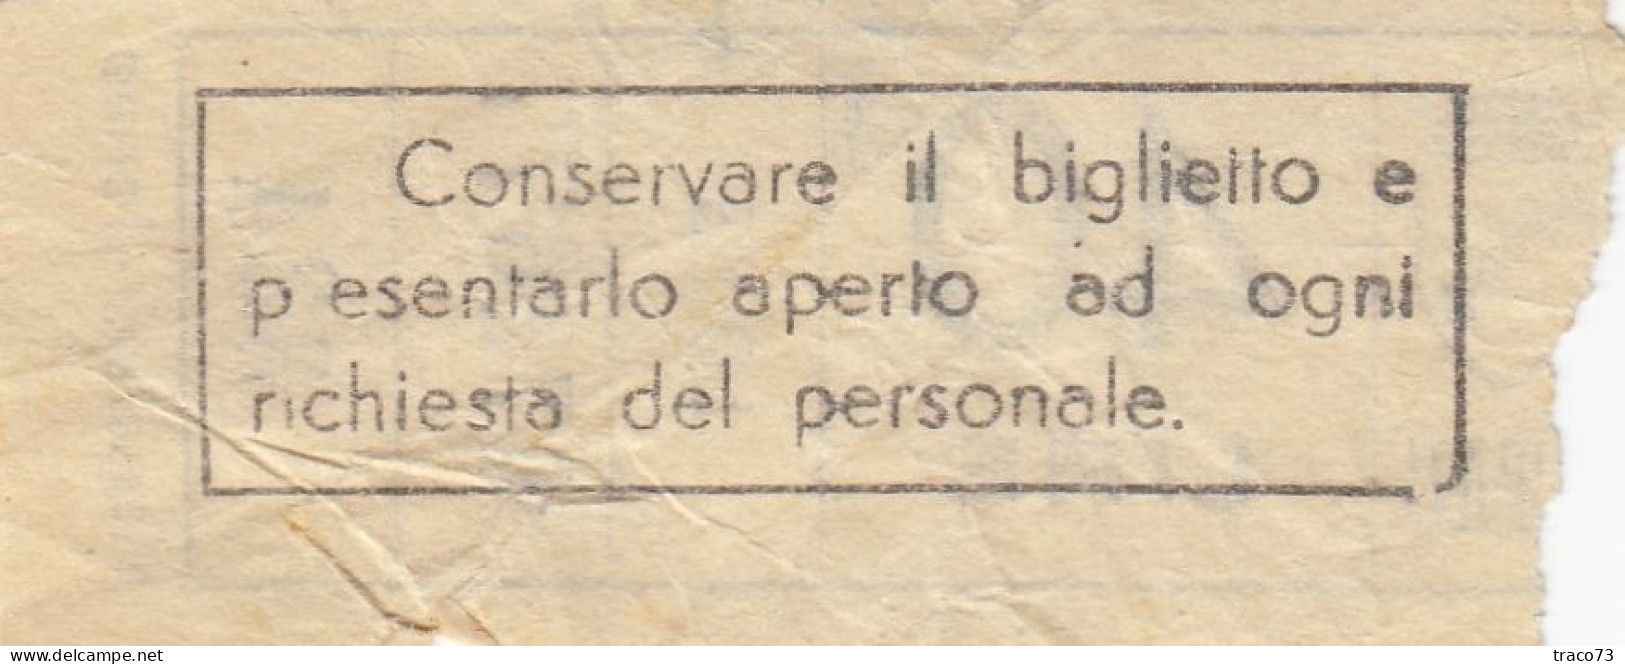 ATAC - ROMA  _ Anni '50-'60 /  Ticket  _ Biglietto Da Lire 40 - Europa